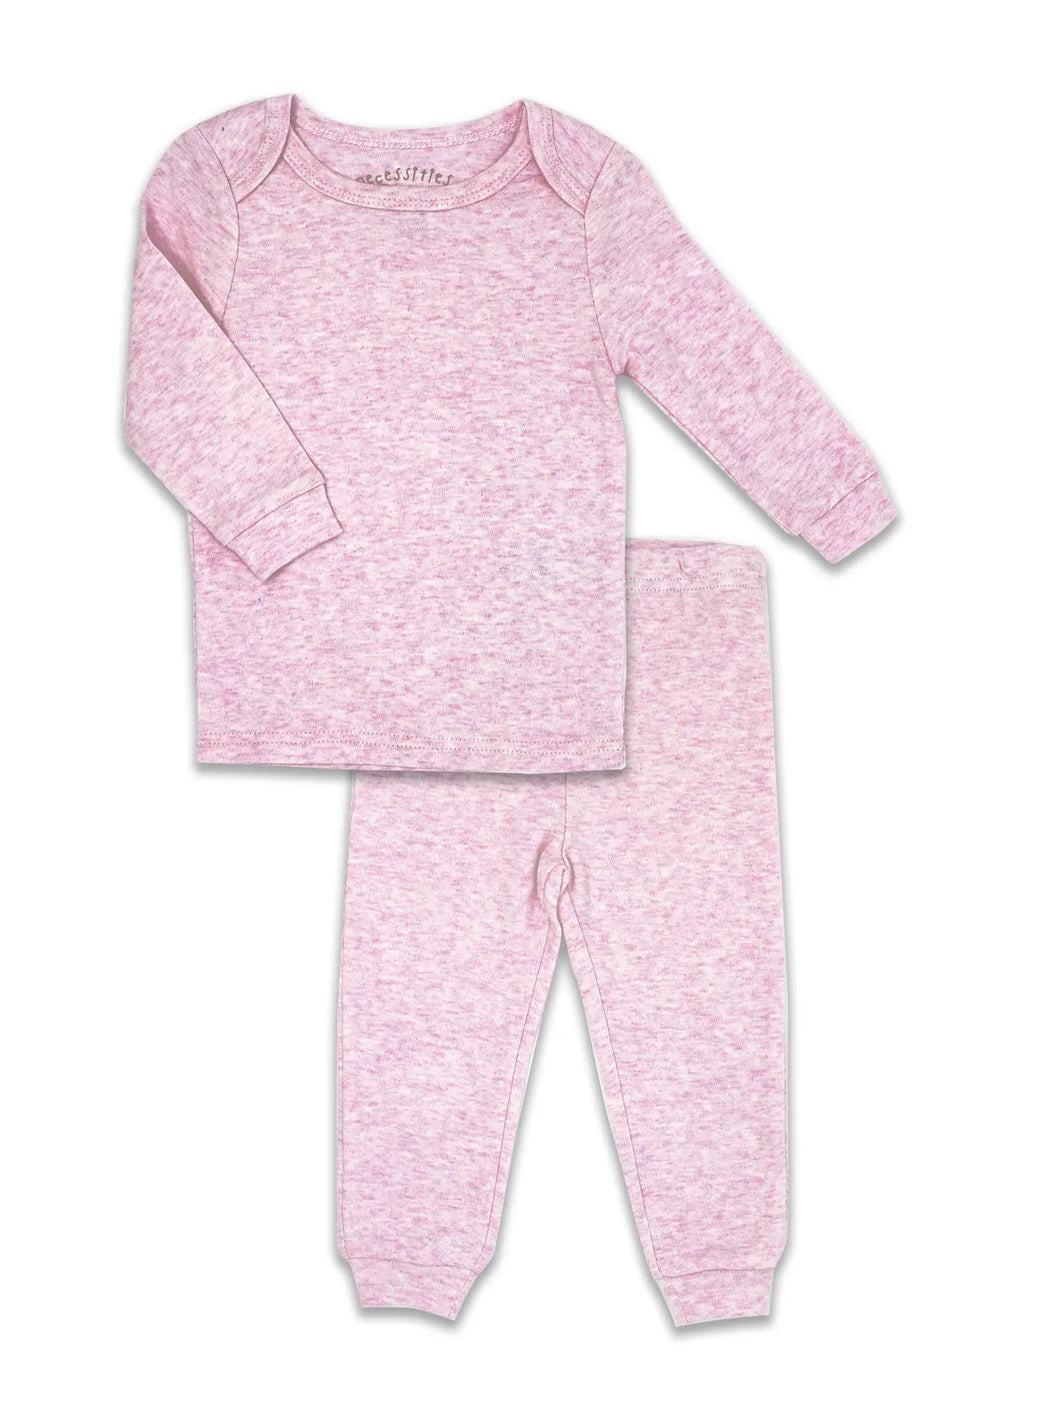 Heather pink pajamas